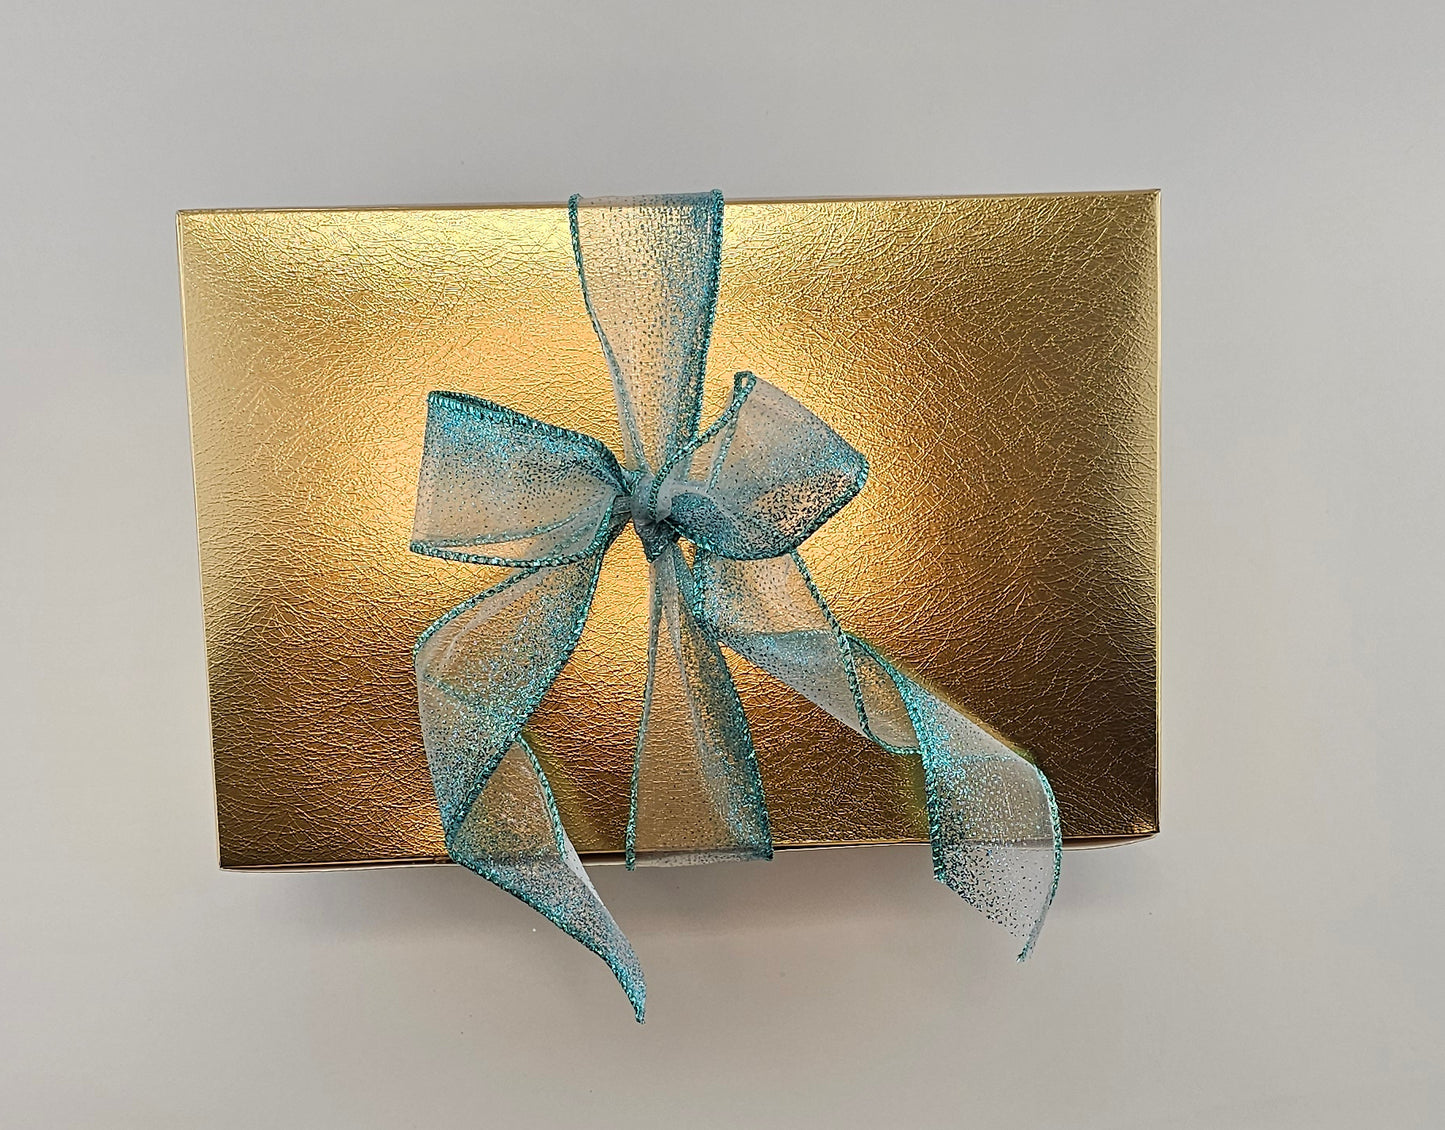 
                  
                    Gift Box Set Chocolate Covered Raisins Hazelnuts & Almonds
                  
                